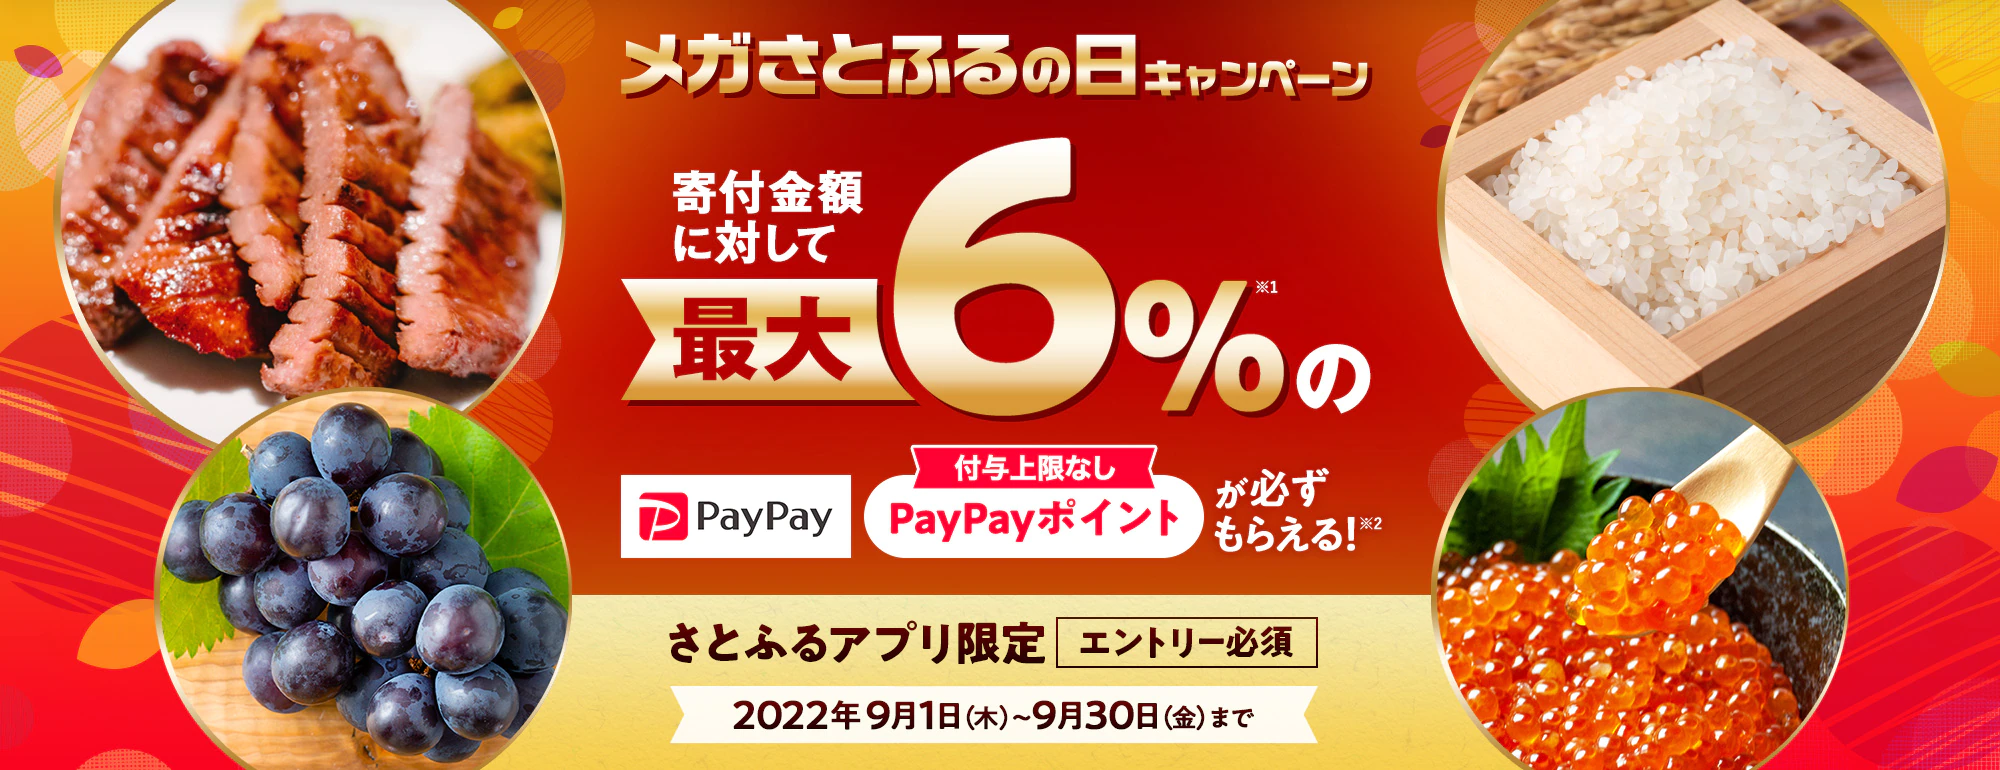 【3と8のつく日限定】さとふるの日「最大6%PayPayポイント」還元キャンペーン